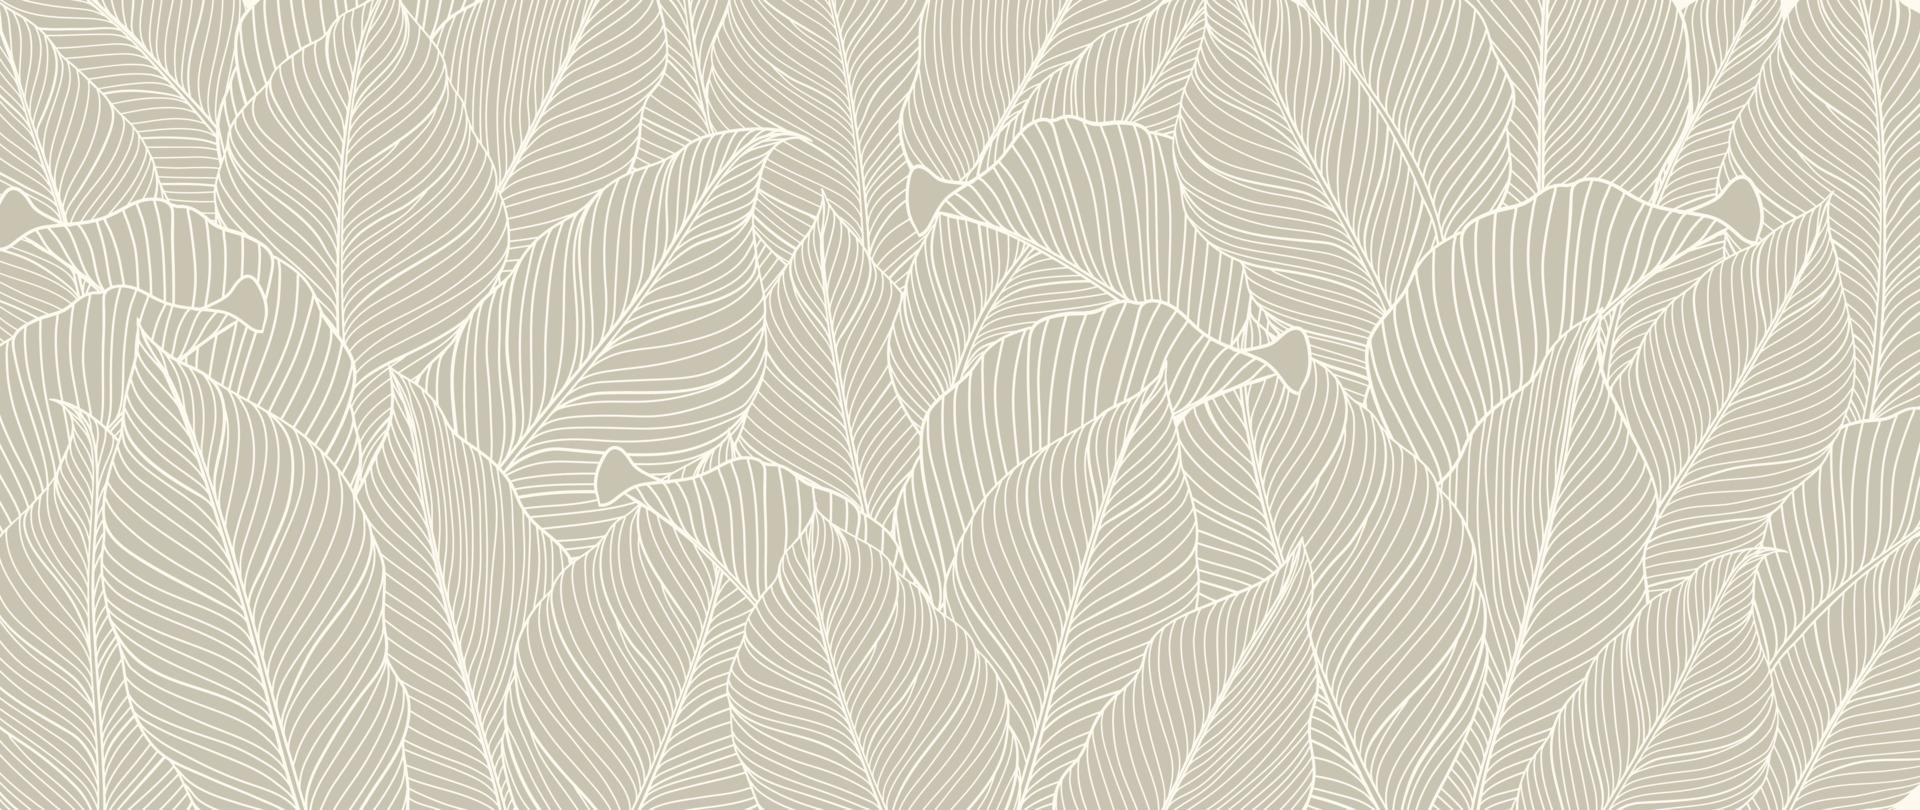 botanisch gebladerte lijn kunst achtergrond vector illustratie. tropisch palm bladeren wit tekening contour patroon achtergrond. ontwerp voor behang, huis decor, verpakking, afdrukken, poster, omslag, spandoek.